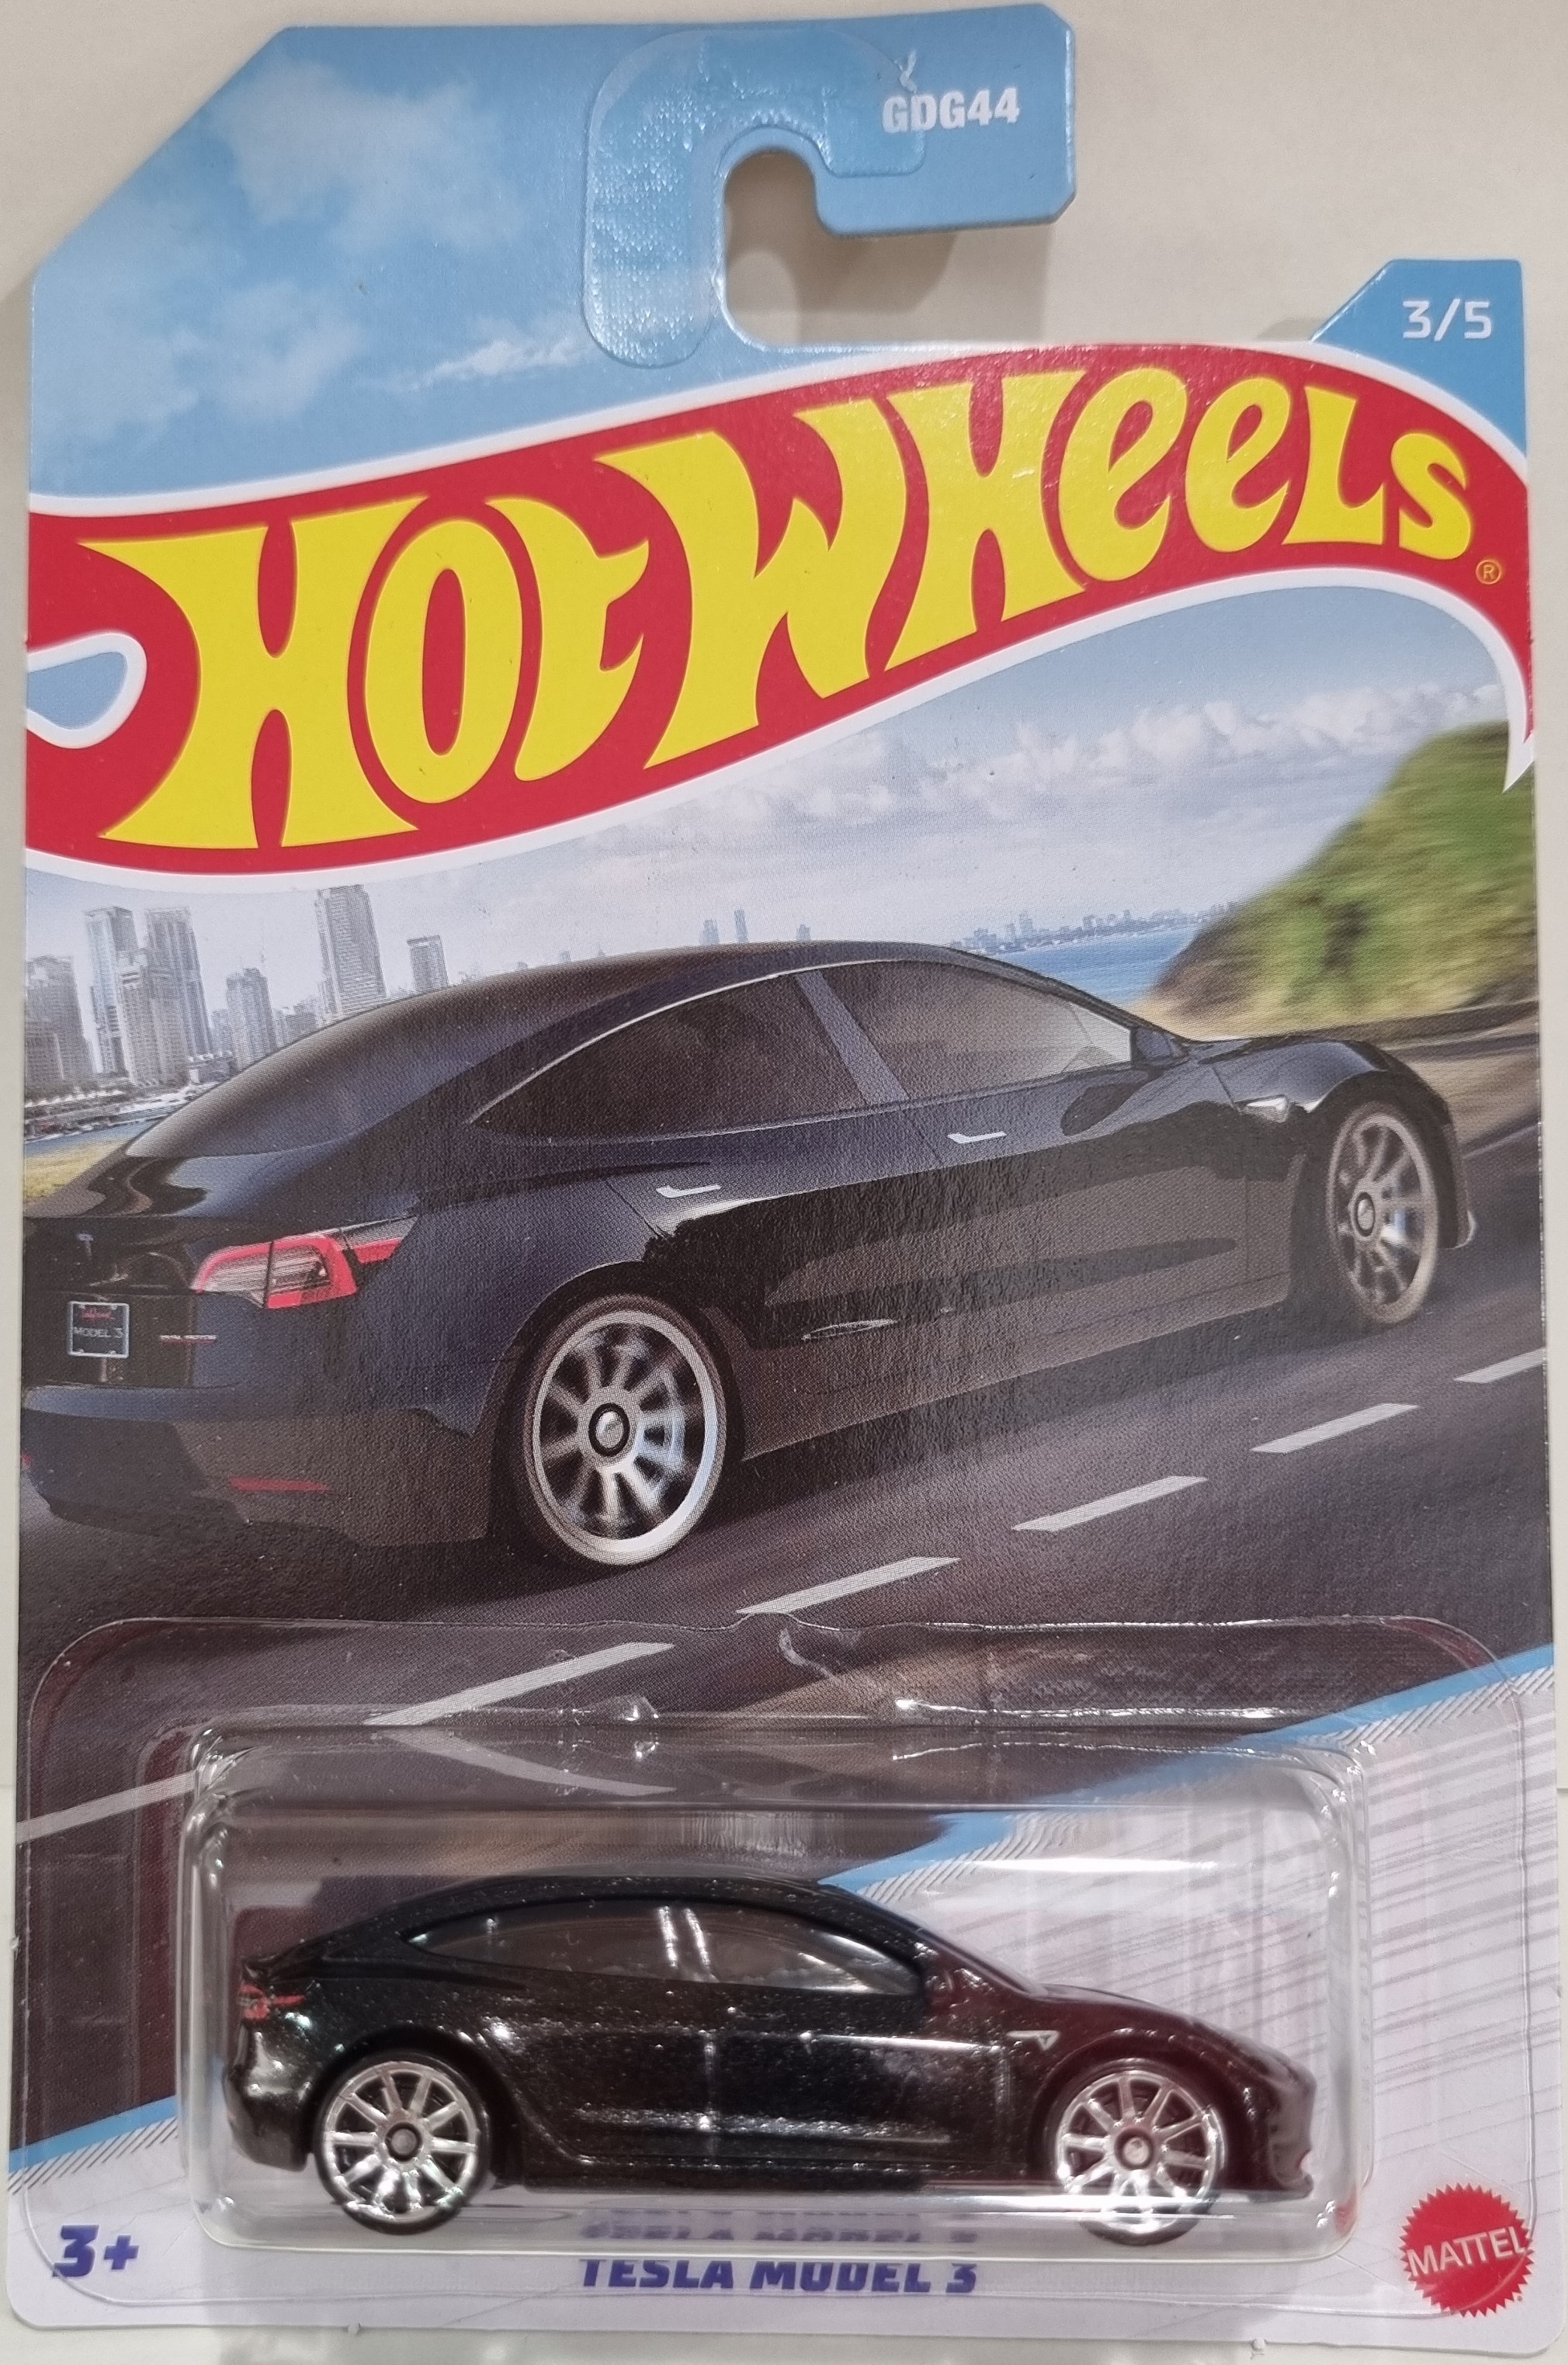 Hot Wheels Tesla Model 3